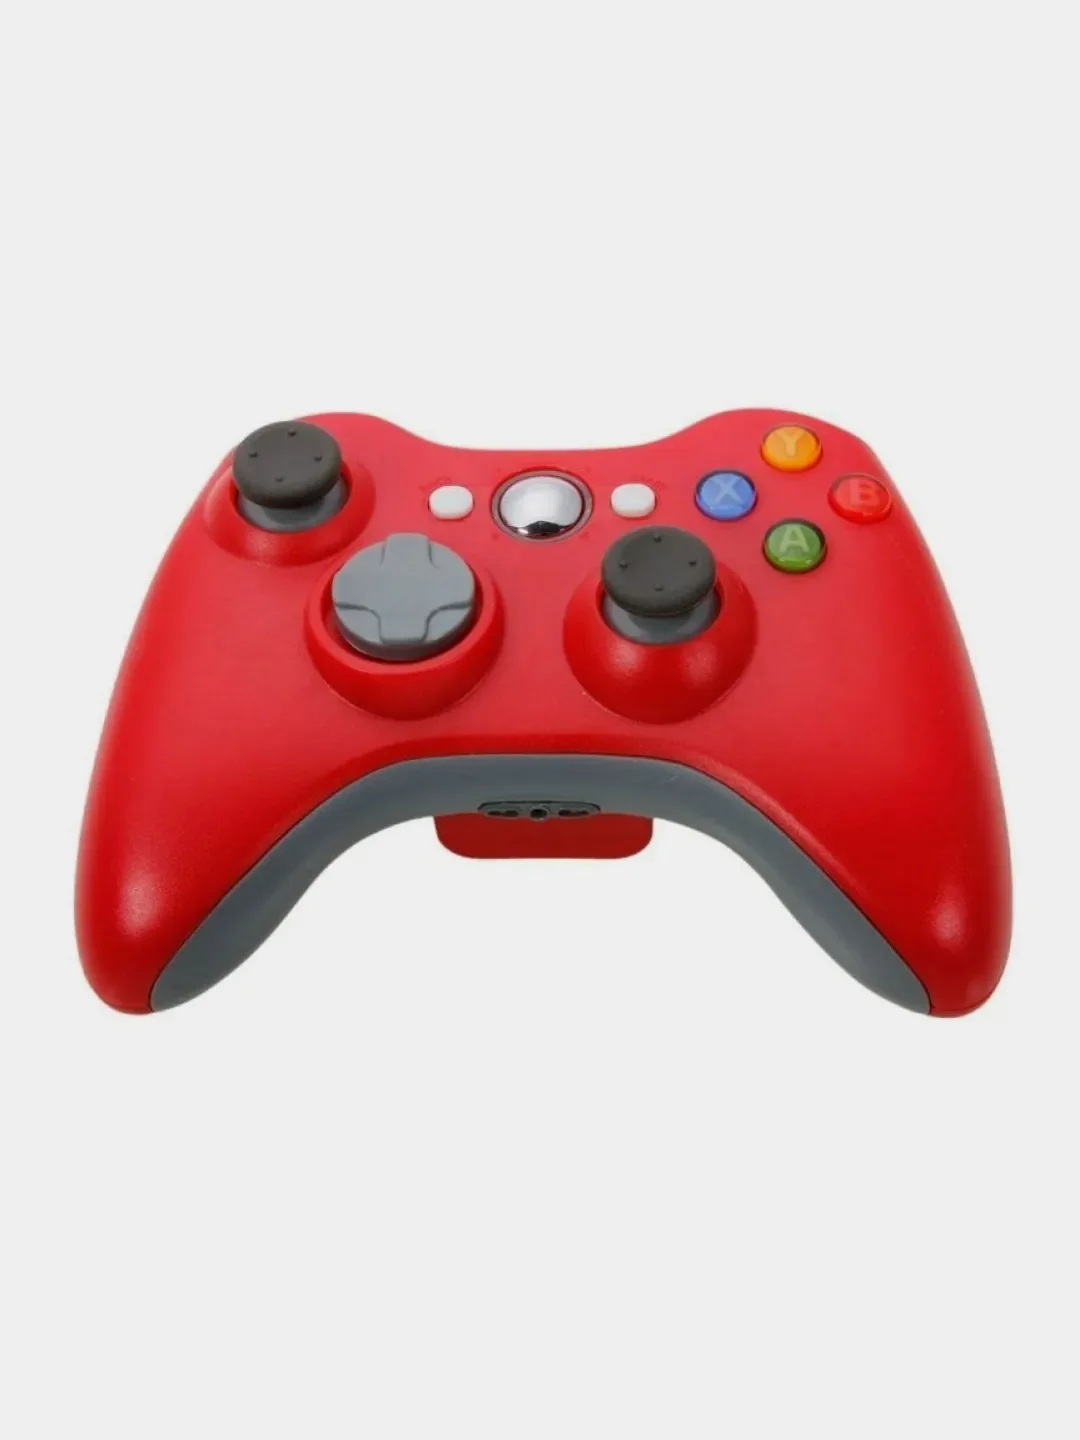 Купить джойстик для xbox 360. Джойстик Xbox 360 красный. Xbox 360 Wireless Controller. Xbox Wireless Controller Red. Геймпад Xbox 360 беспроводной.